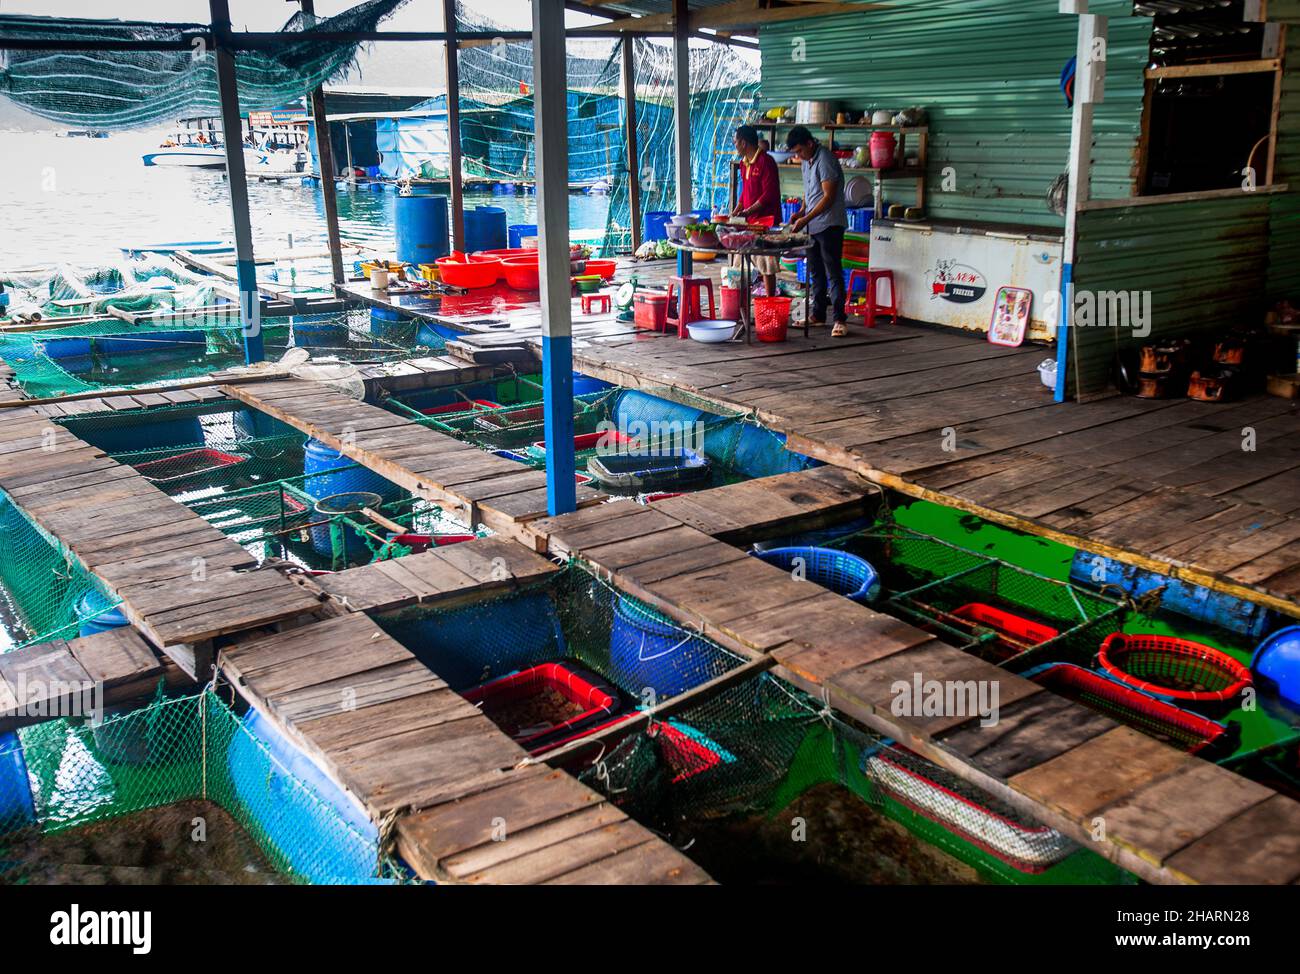 Pesce fresco che tiene carri armati in un ristorante in un villaggio di pescatori vietnamita. Popolare tra le aziende di viaggi e turisti. Foto Stock